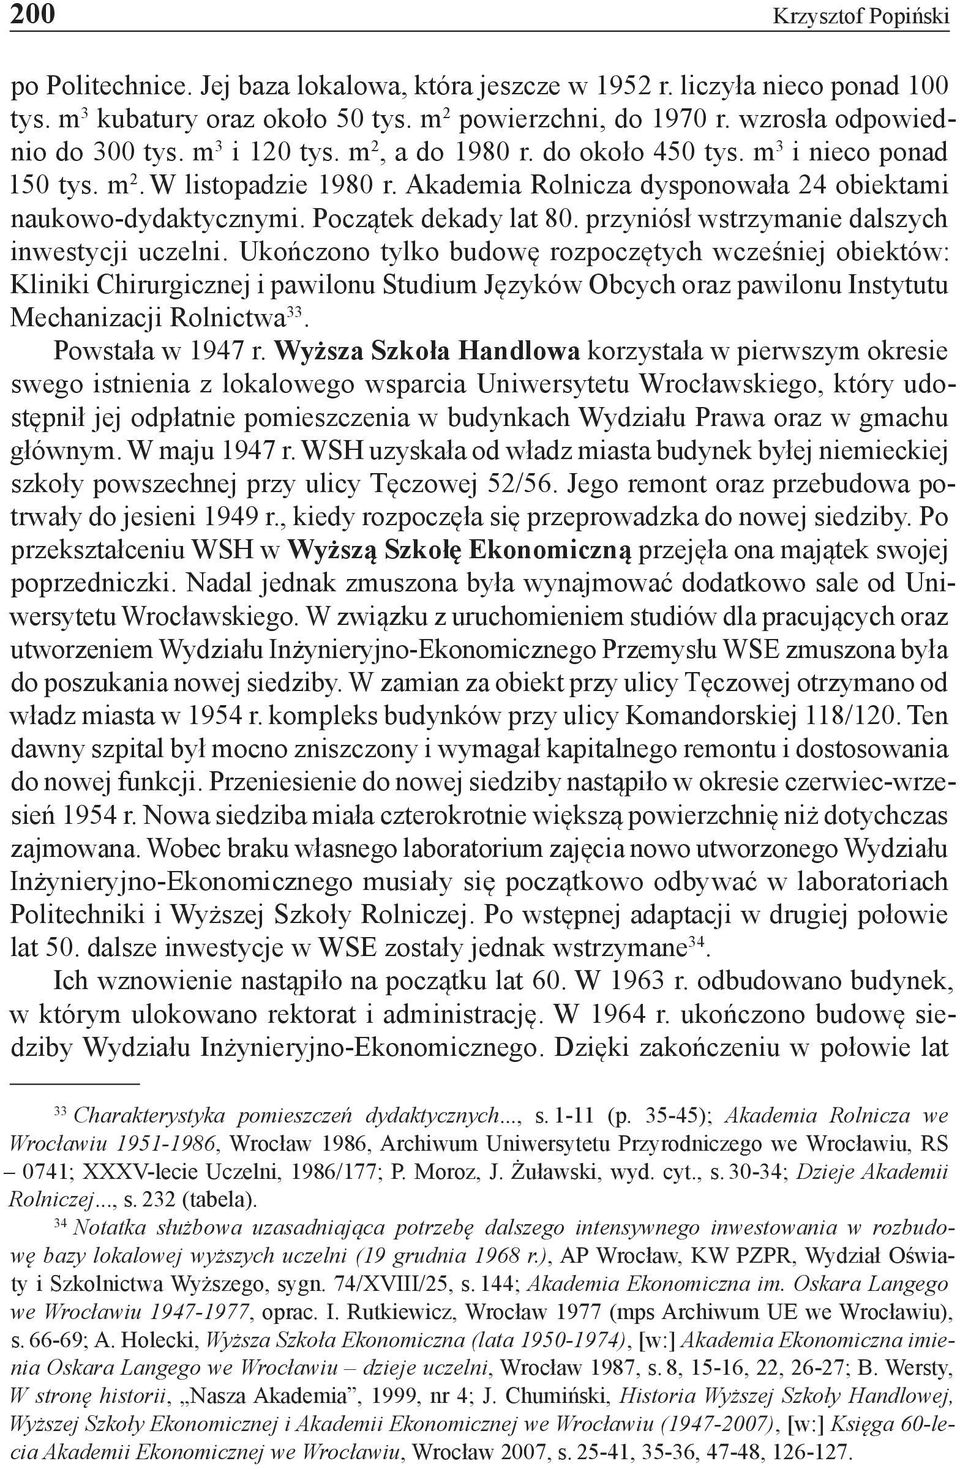 Akademia Rolnicza dysponowała 24 obiektami naukowo-dydaktycznymi. Początek dekady lat 80. przyniósł wstrzymanie dalszych inwestycji uczelni.